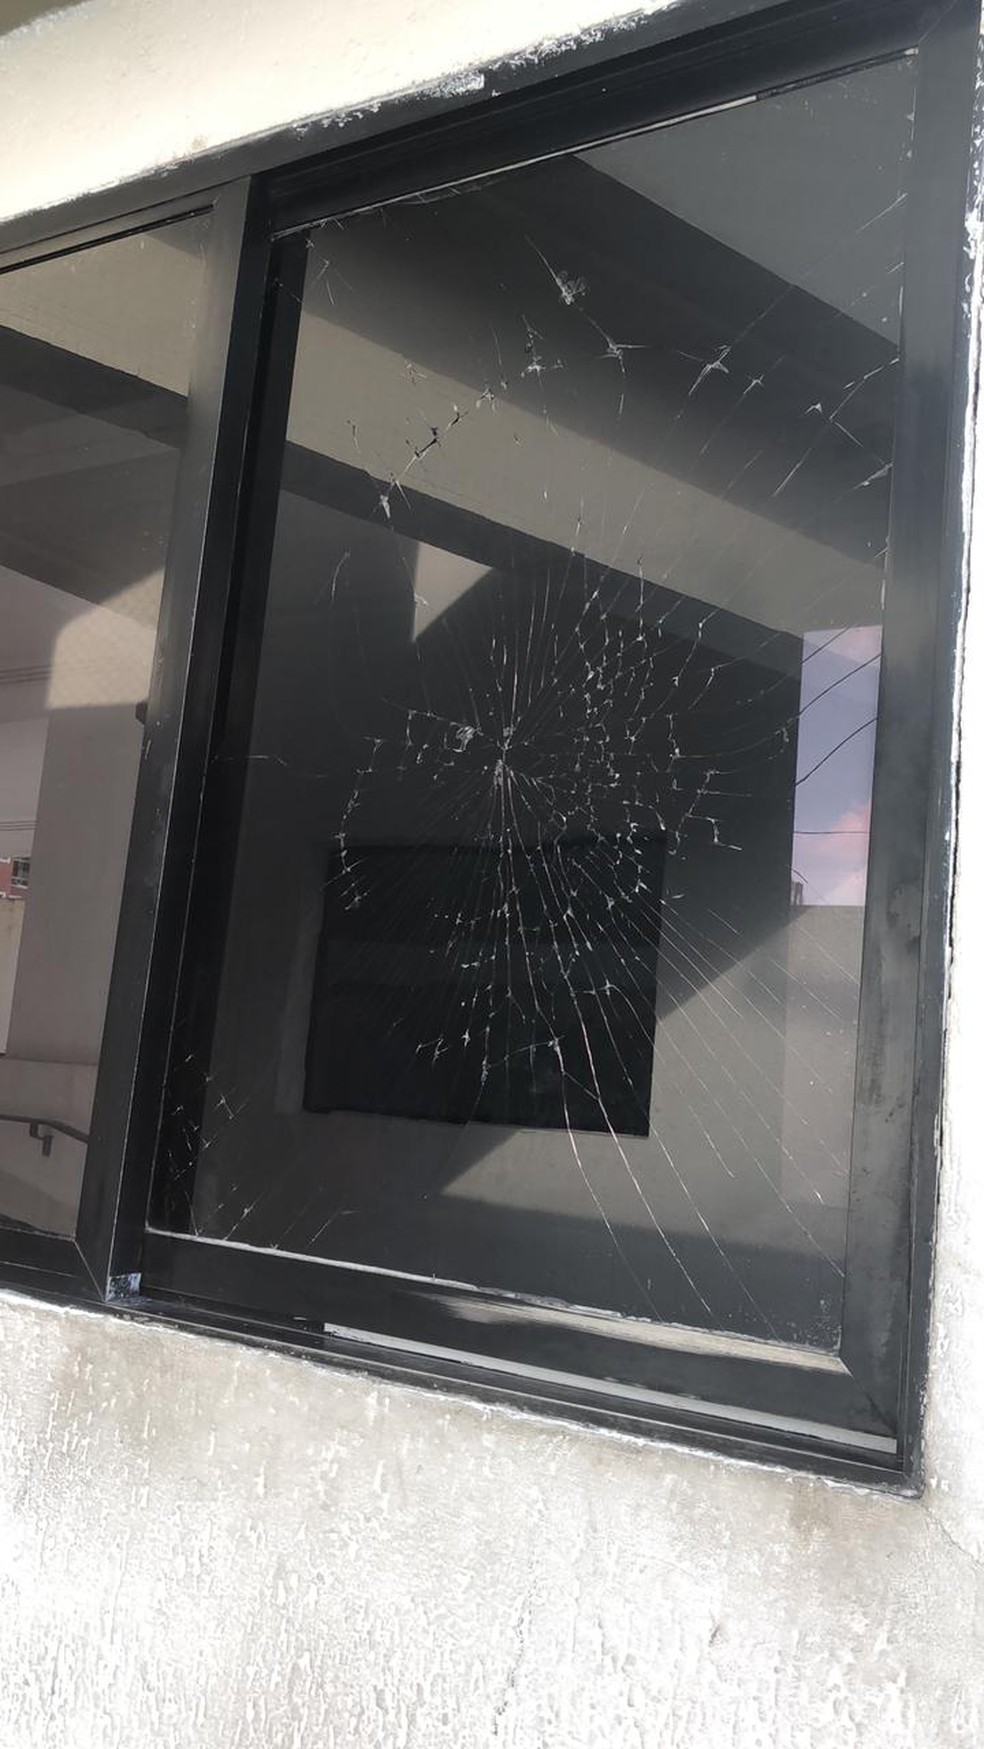 Segundo relata zelador, vidro de portaria foi quebrado por nutricionista em março deste ano — Foto: Arquivo pessoal